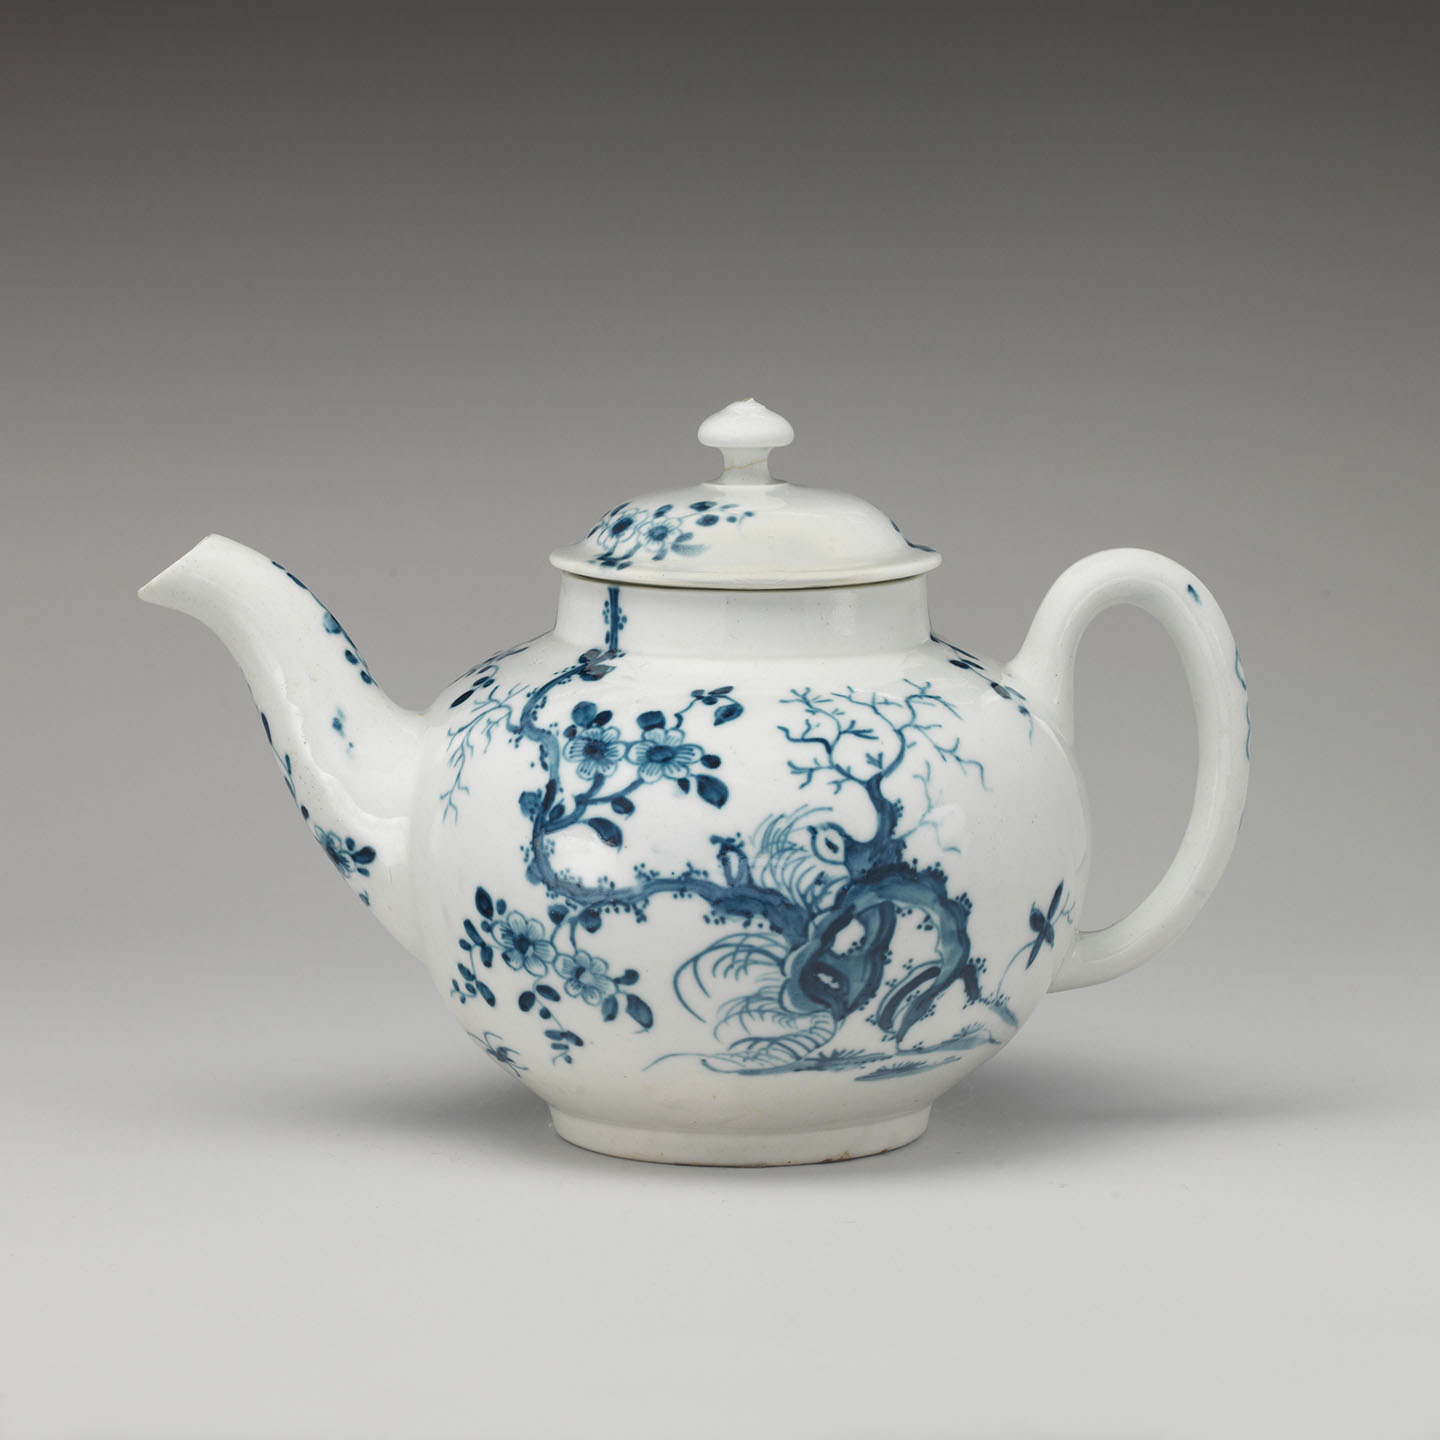 Ấm trà Anh quốc, hãng đồ sứ Worcester, khoảng năm 1770. Đồ sứ mềm có lớp men nền màu xanh lam; kích thước: 4 1/2 inch. Bảo tàng nghệ thuật Metropolitan, thành phố New York. (Ảnh: Tư liệu công cộng)